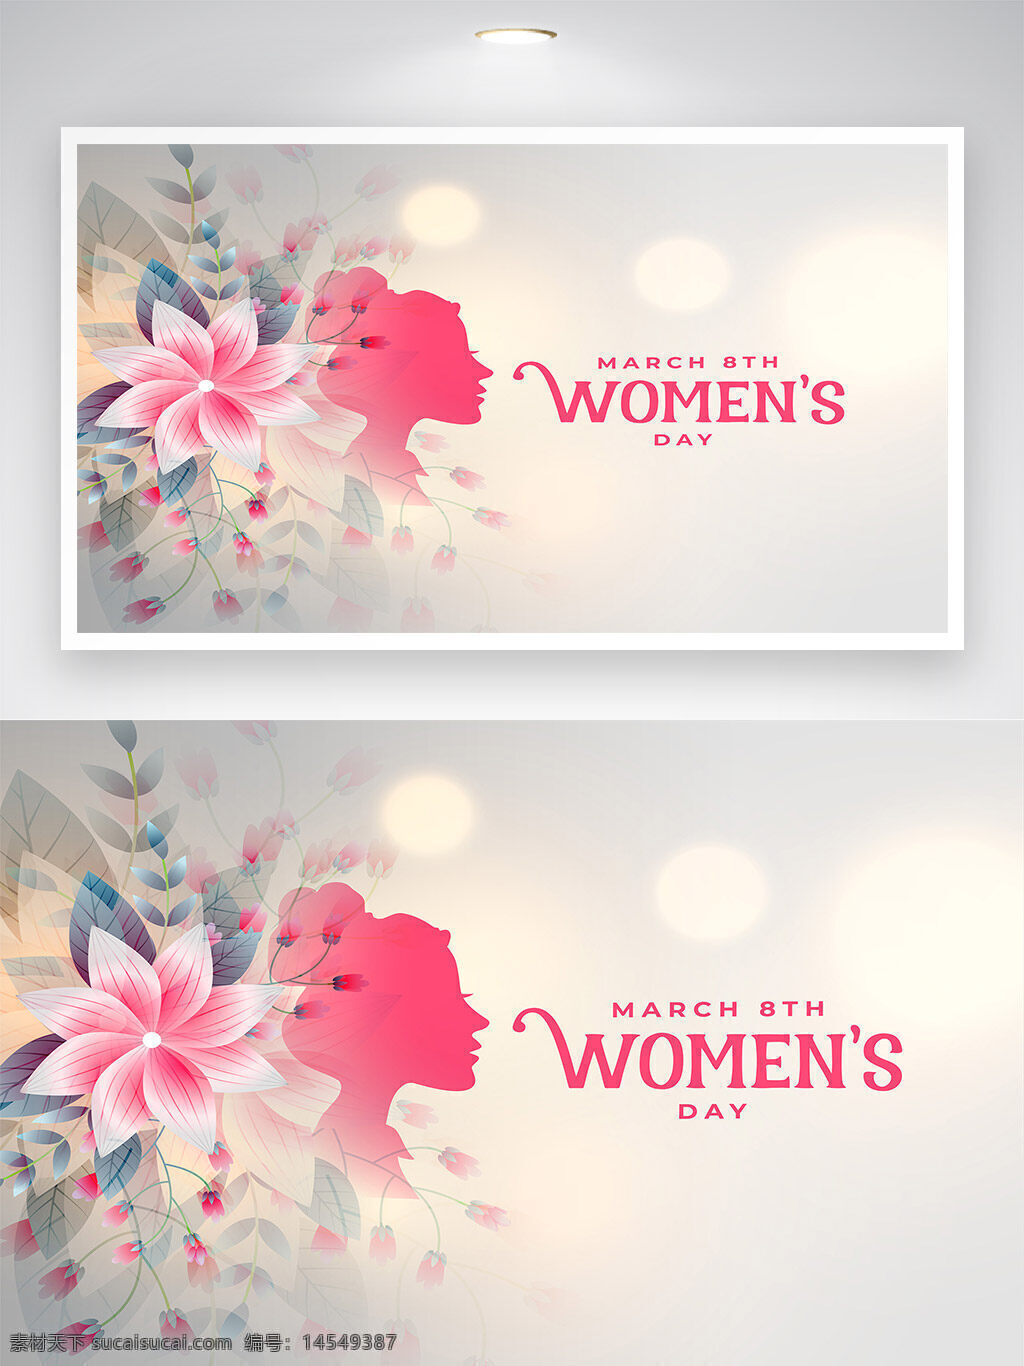 妇女节 38 三八 女神节 国际妇女节 3月8日 矢量素材 海报素材 广告素材 广告装饰 背景素材 创意背景 背景设计 广告背景 海报背景